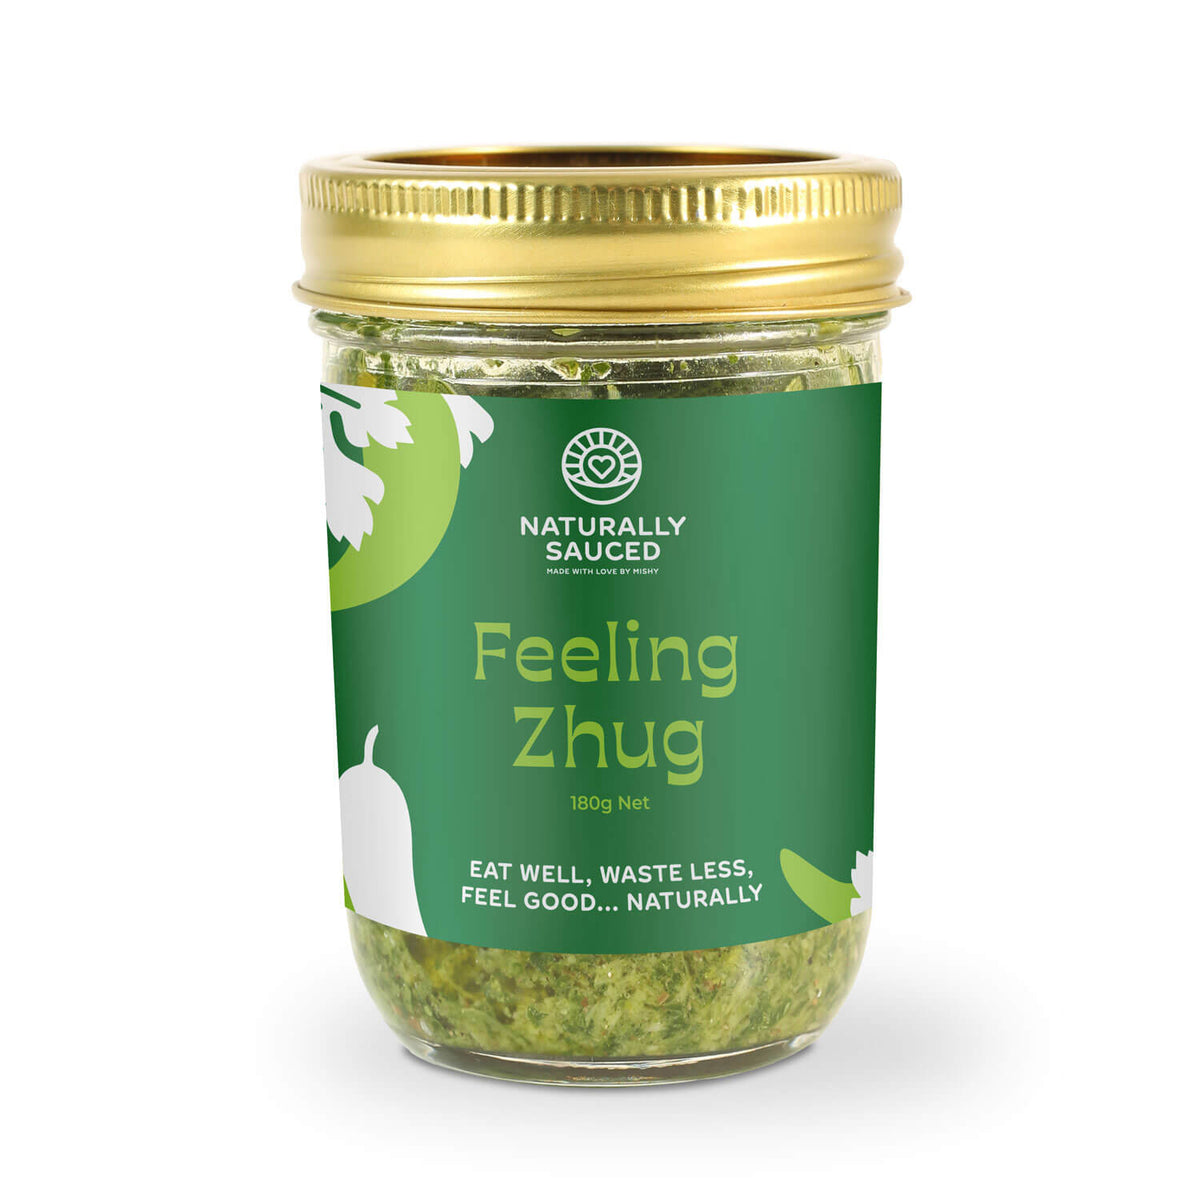 naturally sauced feeling zhug sauce